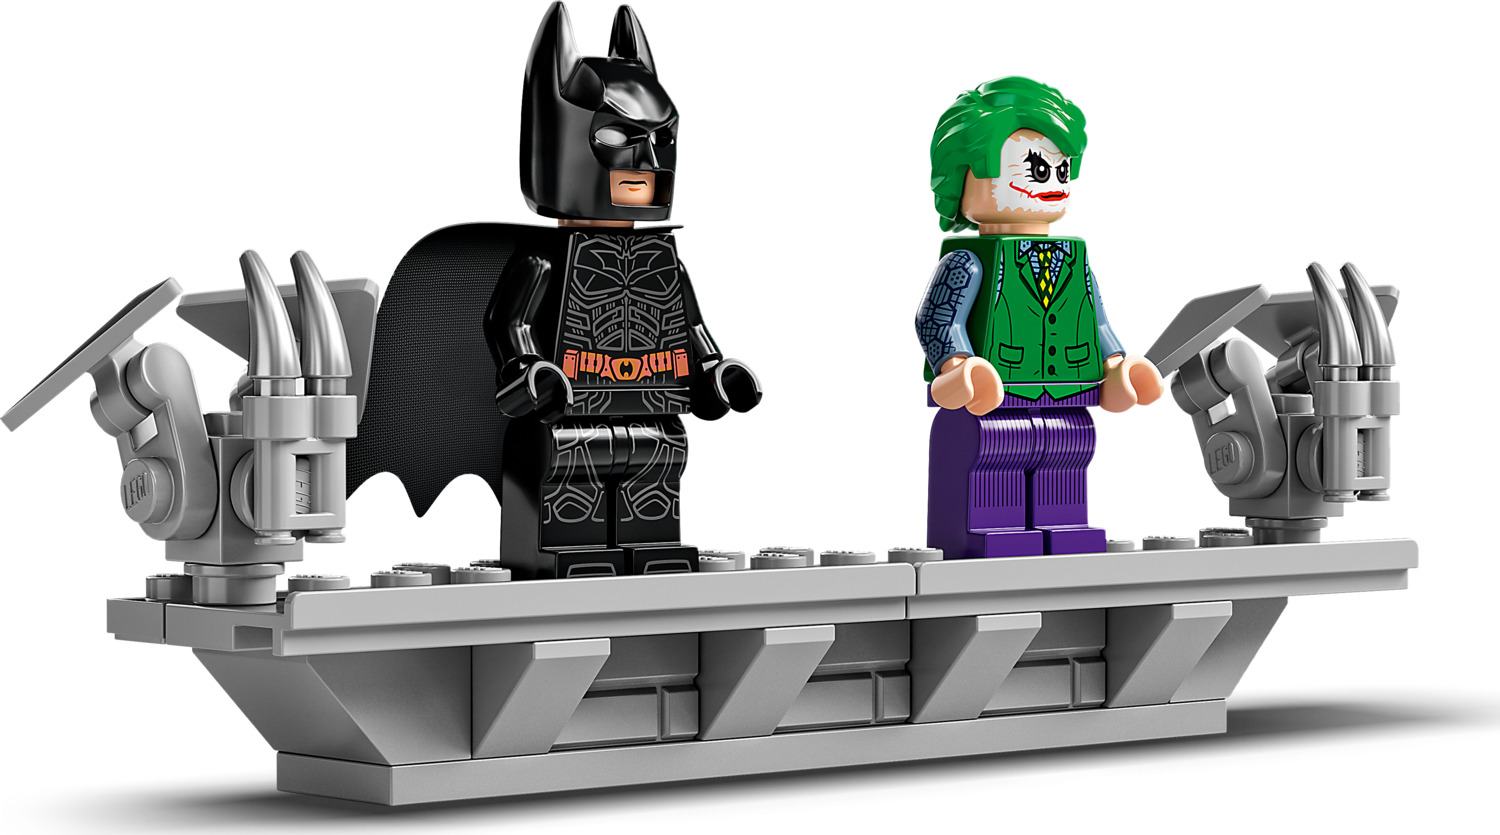 LEGO Dark Knight Batman Joker Tumbler Minifigures Figures 76023 